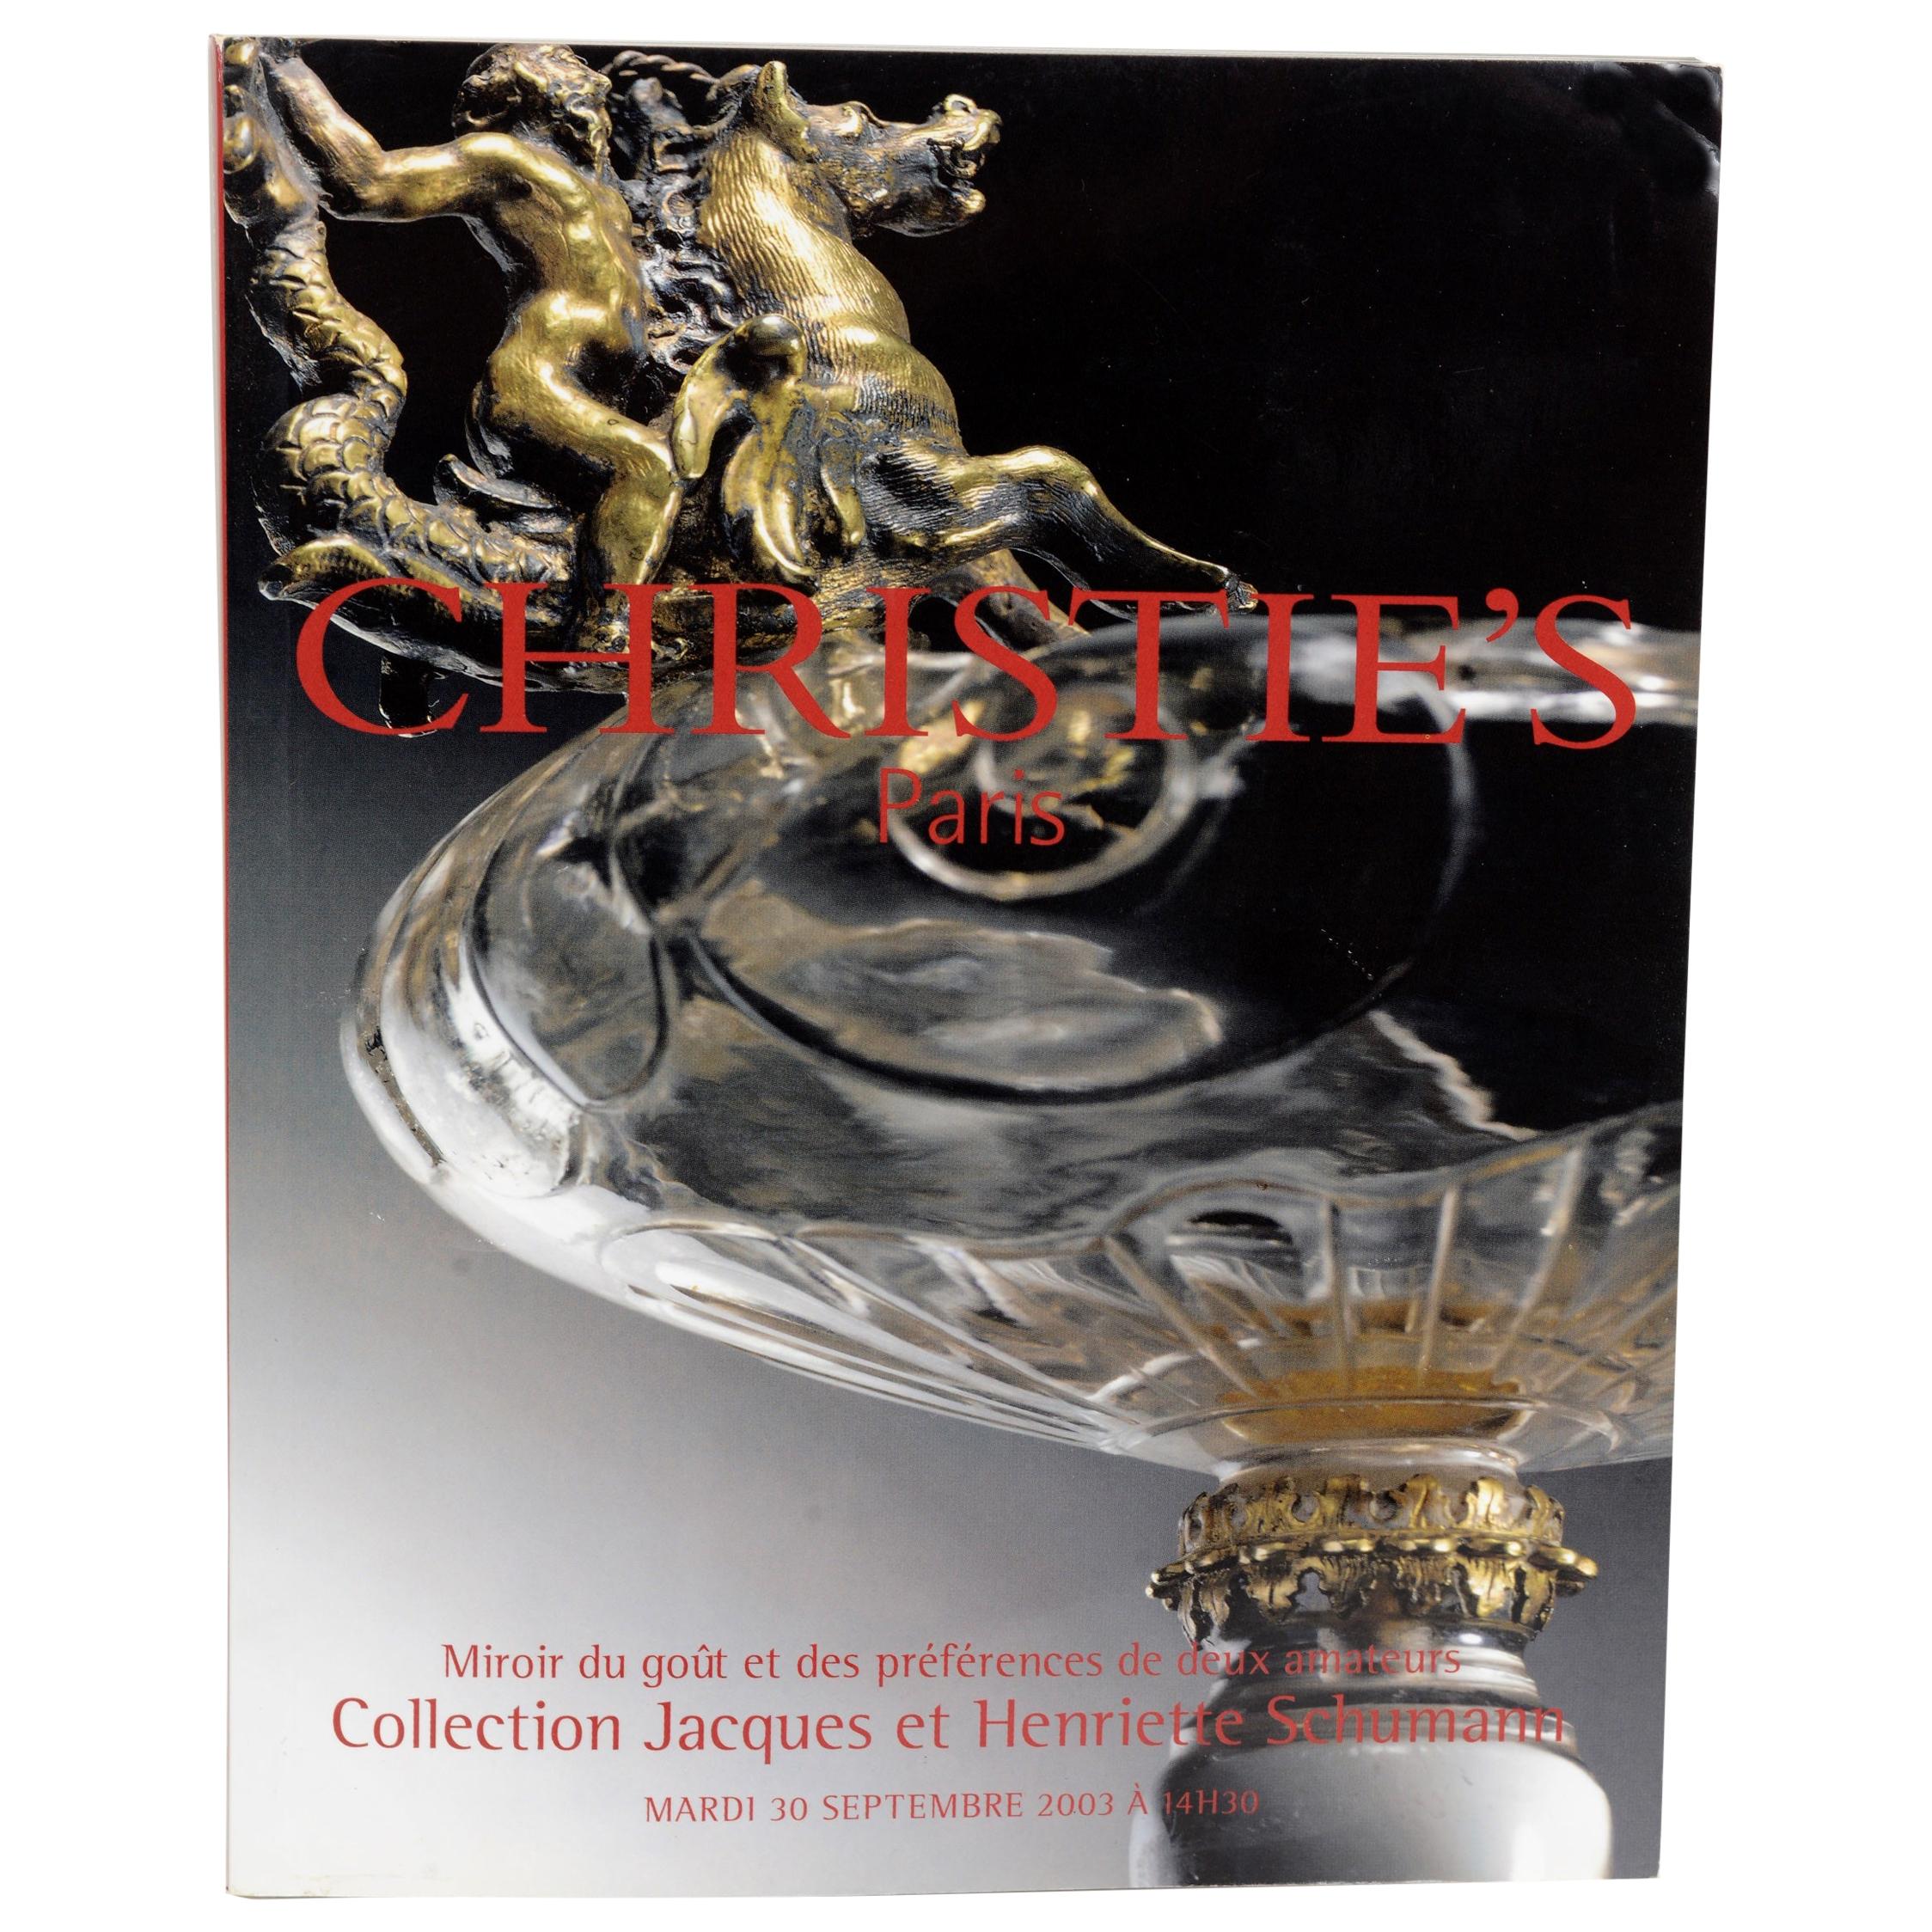 Christie's Paris Collection Jacques et Henriette Schumann